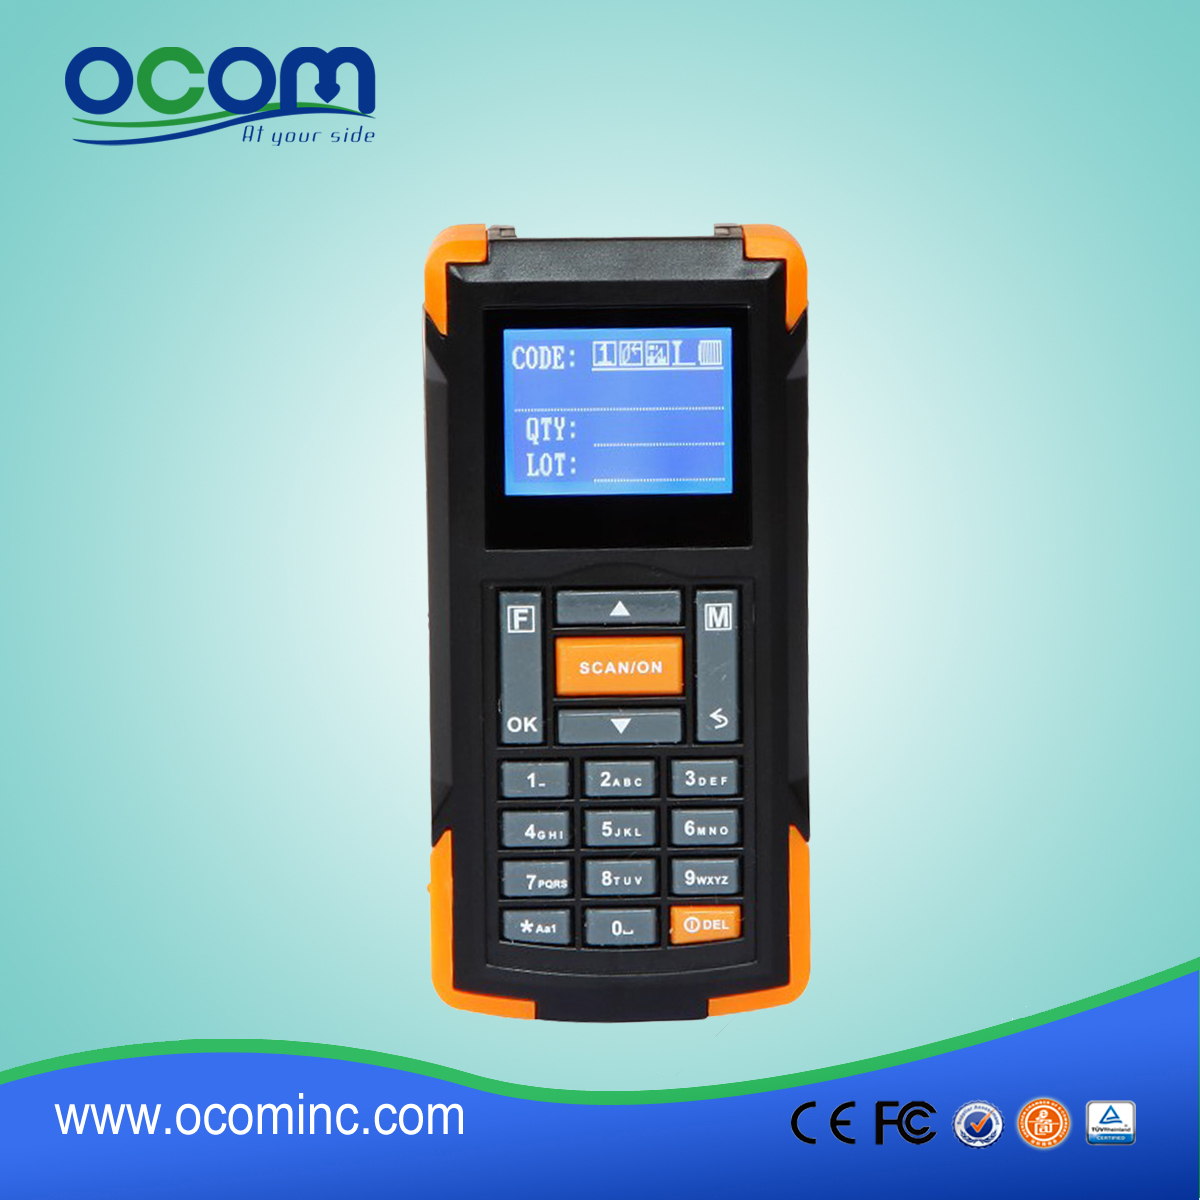 蓝牙条形码扫描仪便/携式数据采集器（OCBS-D105）